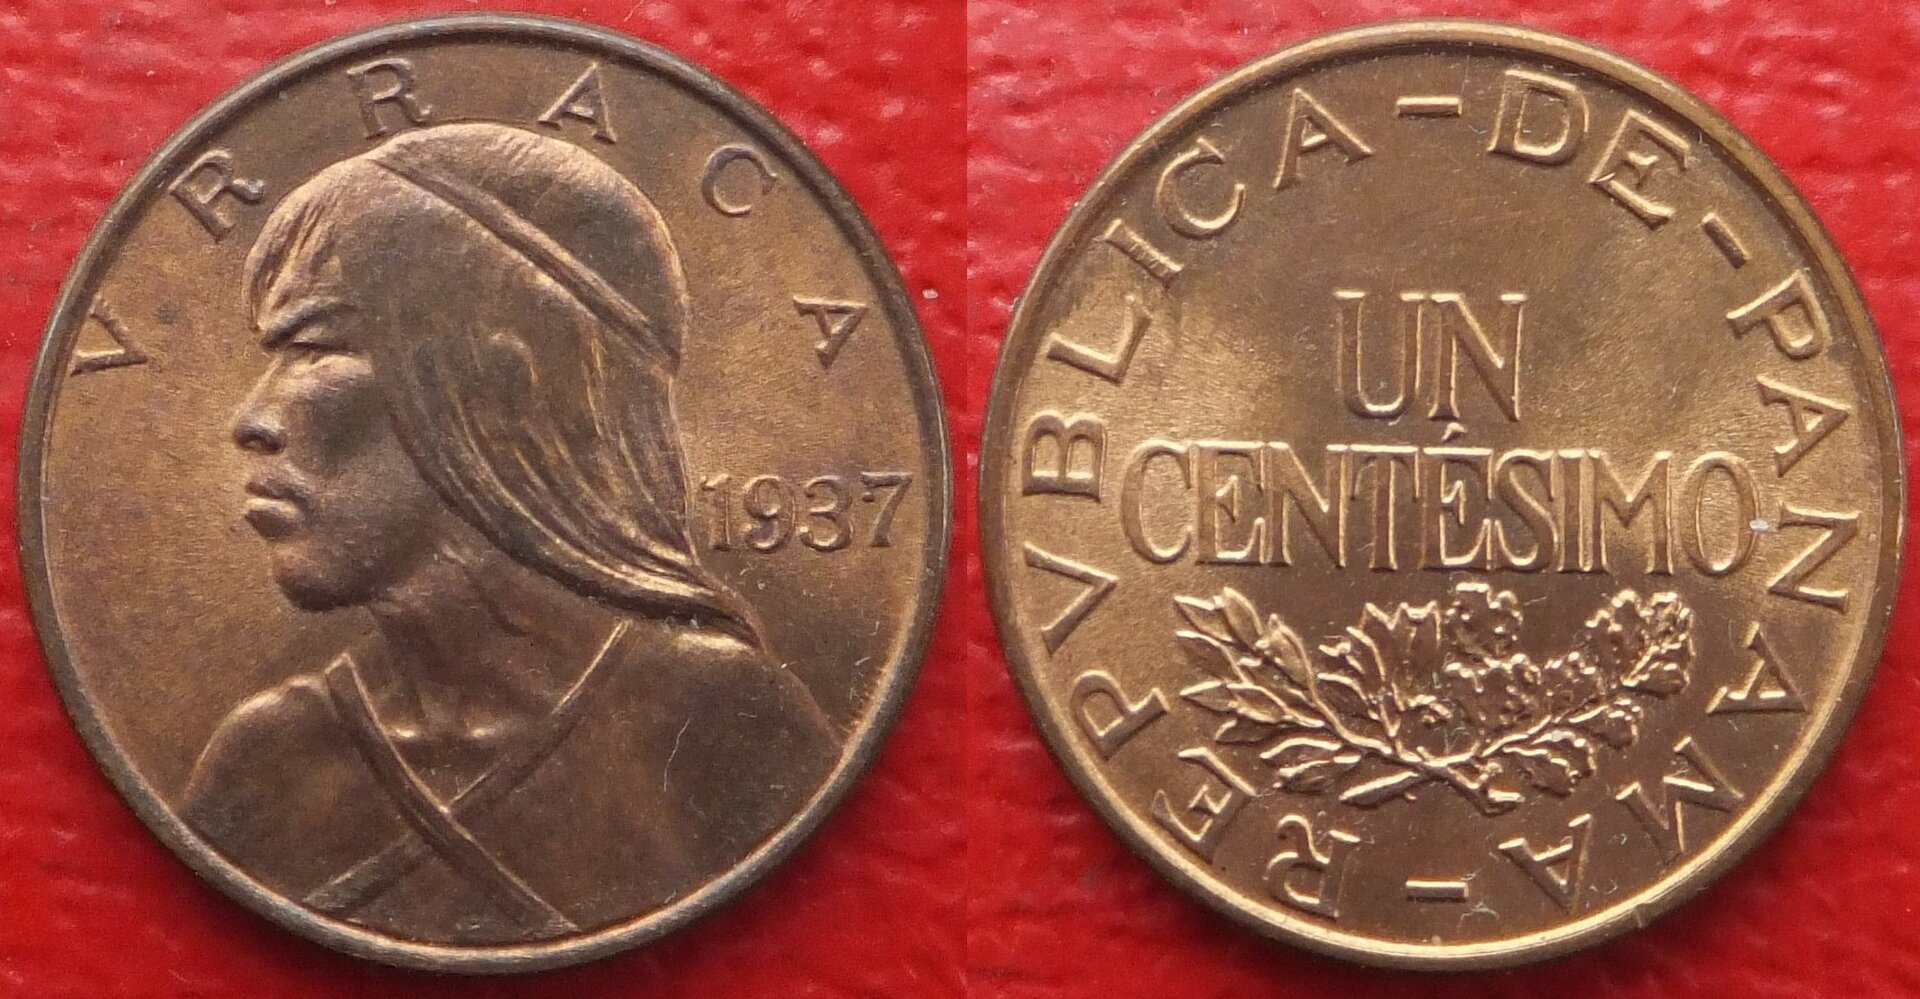 Panama 1 centesimo 1937 (2a).jpg